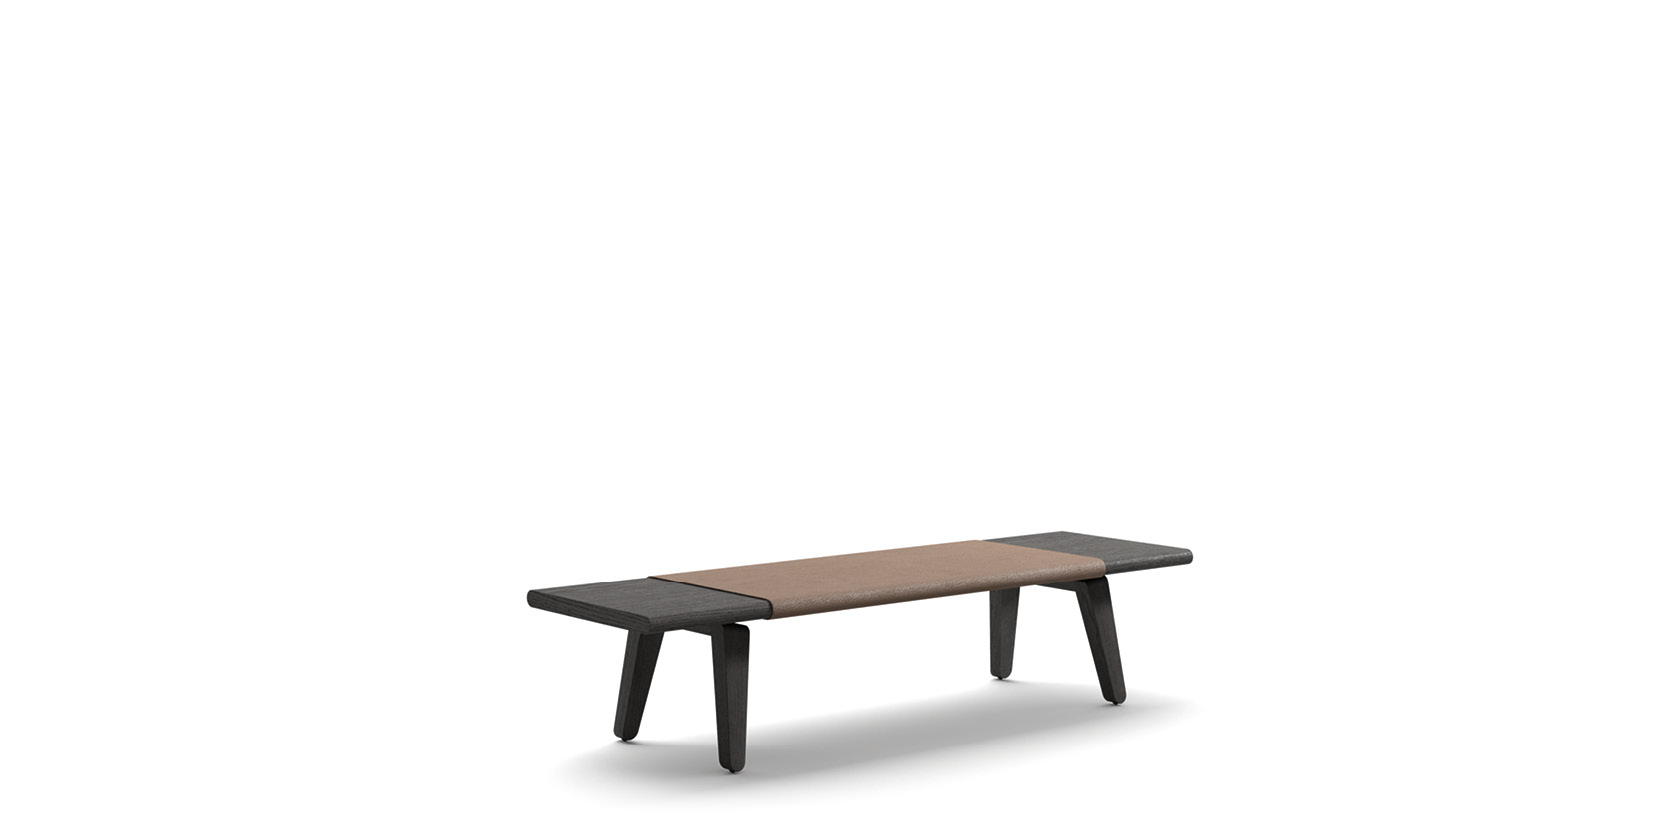 Acute Wood bench by Rodolfo Dordoni | Cassina